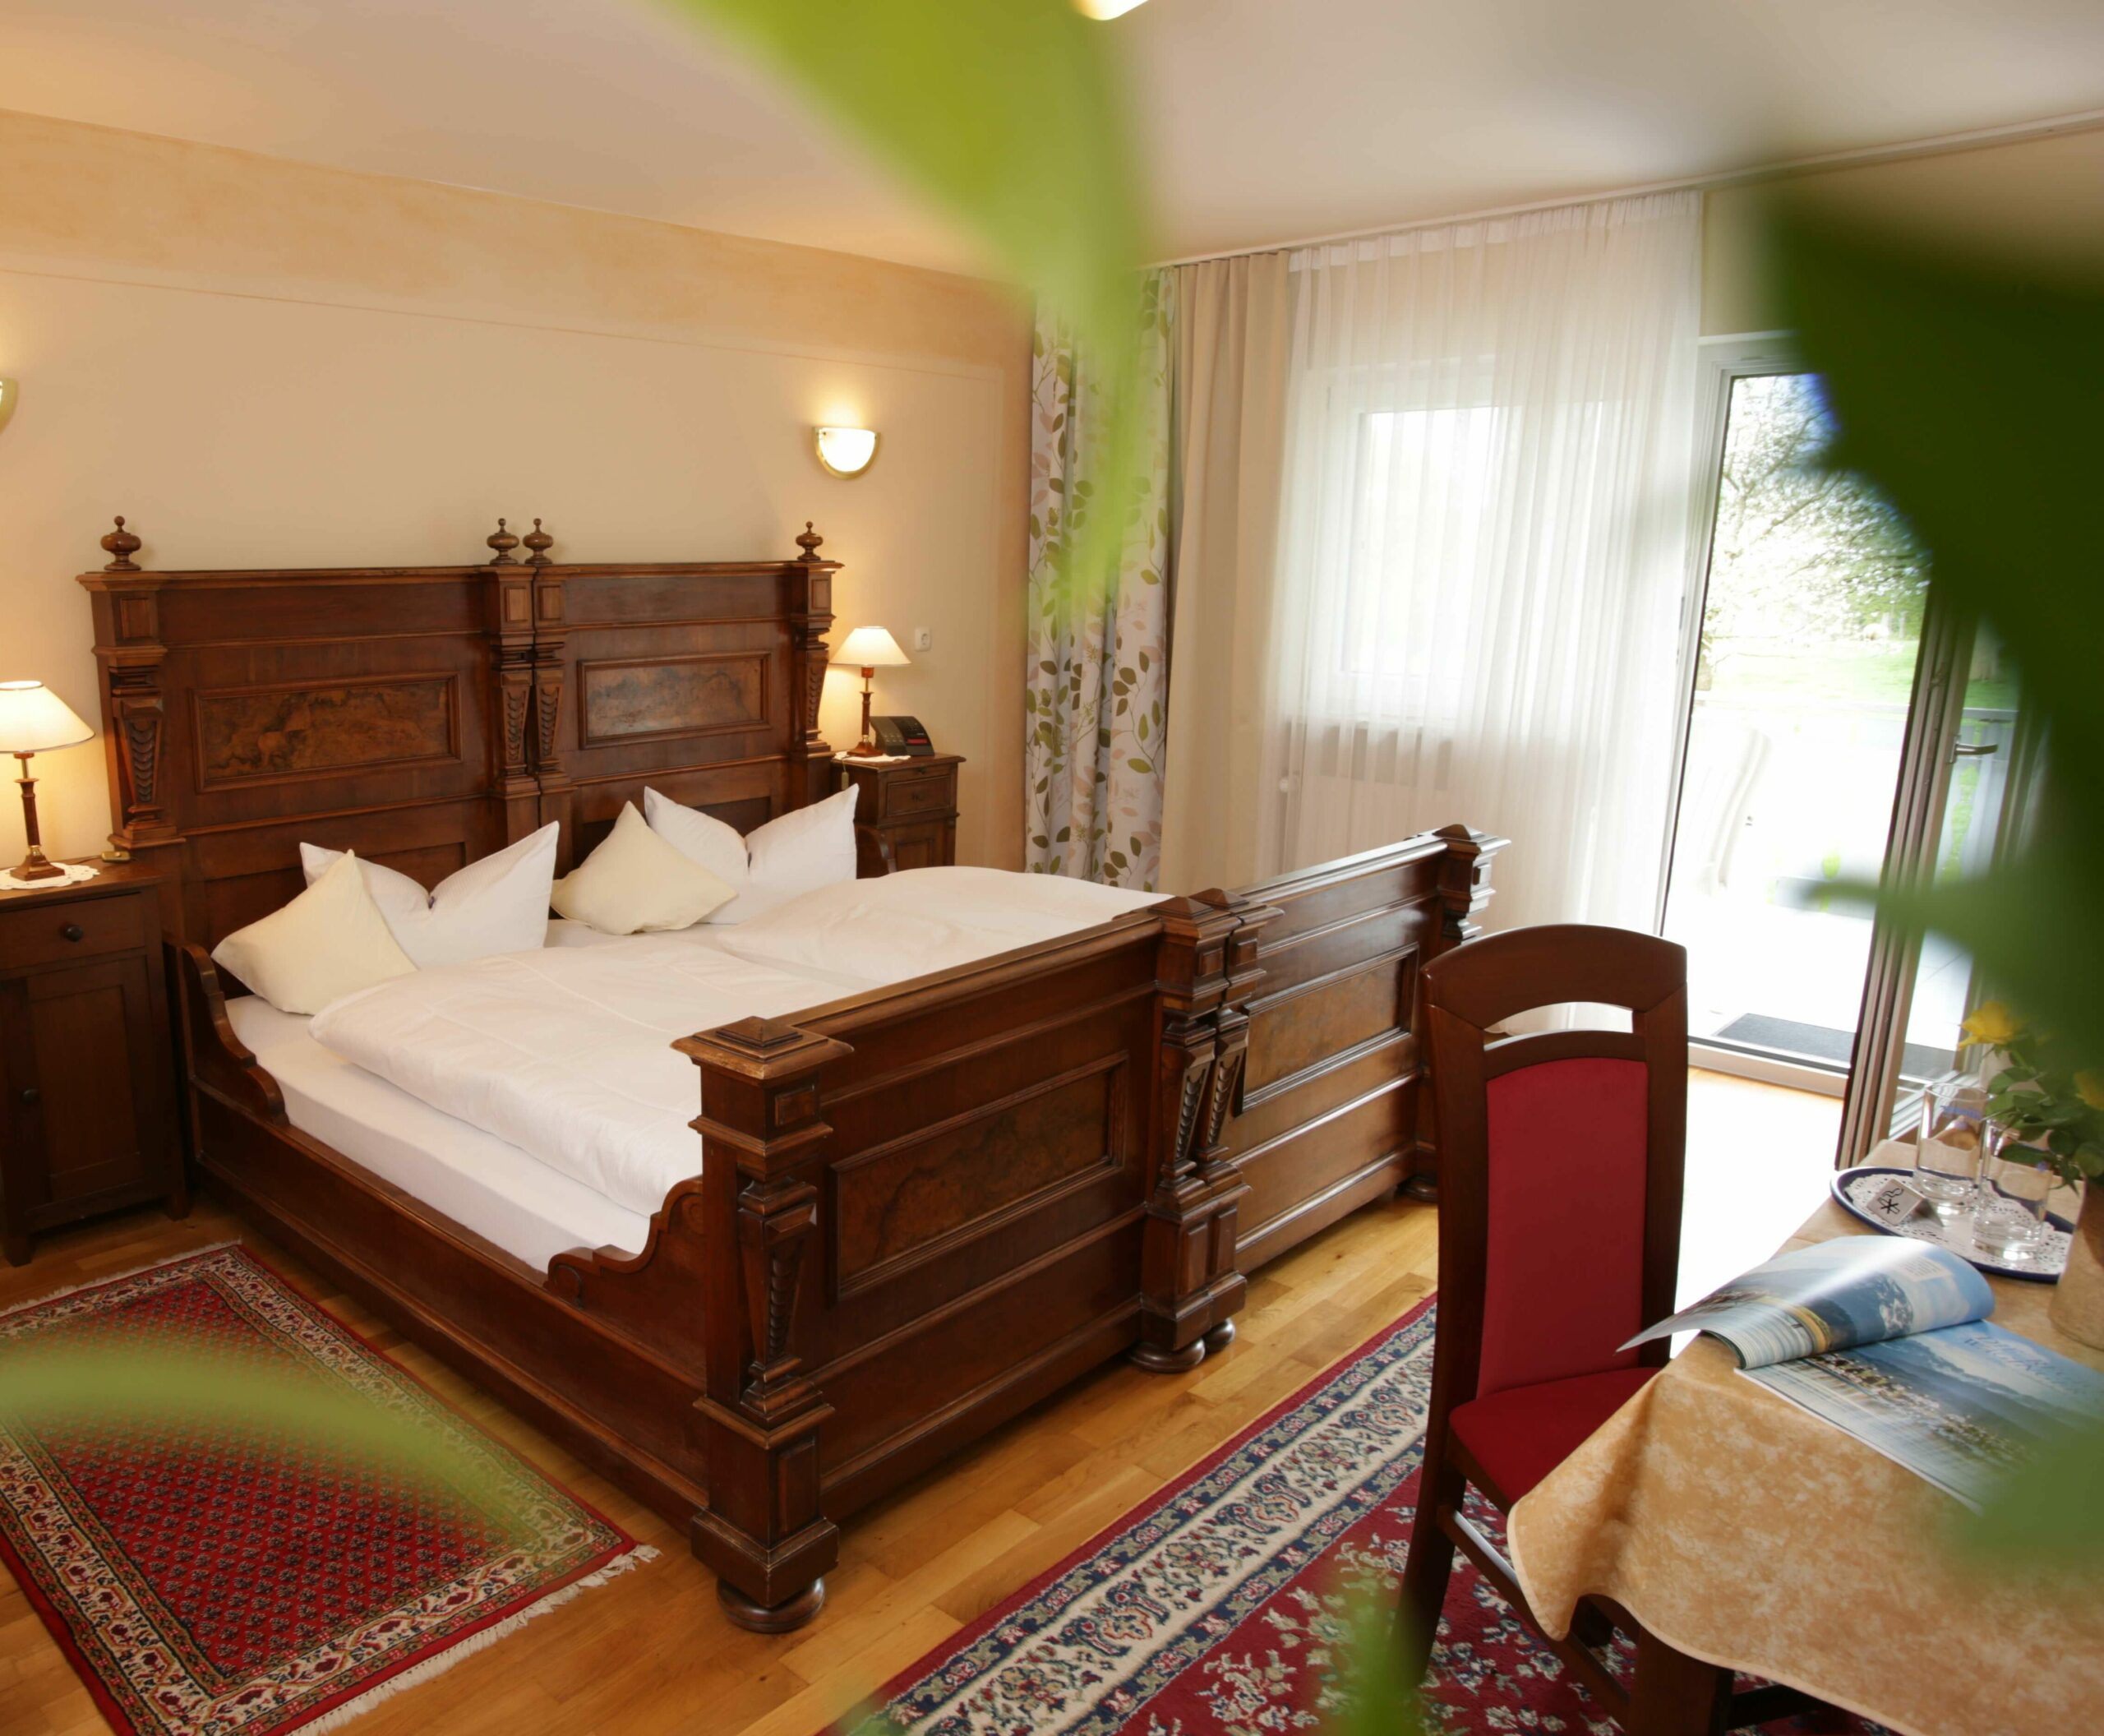 Ein frisch bezogenes großes Holzbett in einem sonnengefluteten Zimmer, vorne ein Tisch mit Stuhl und hinter dem Bett eine große Fensterfront und eine geöffnete Balkontüre